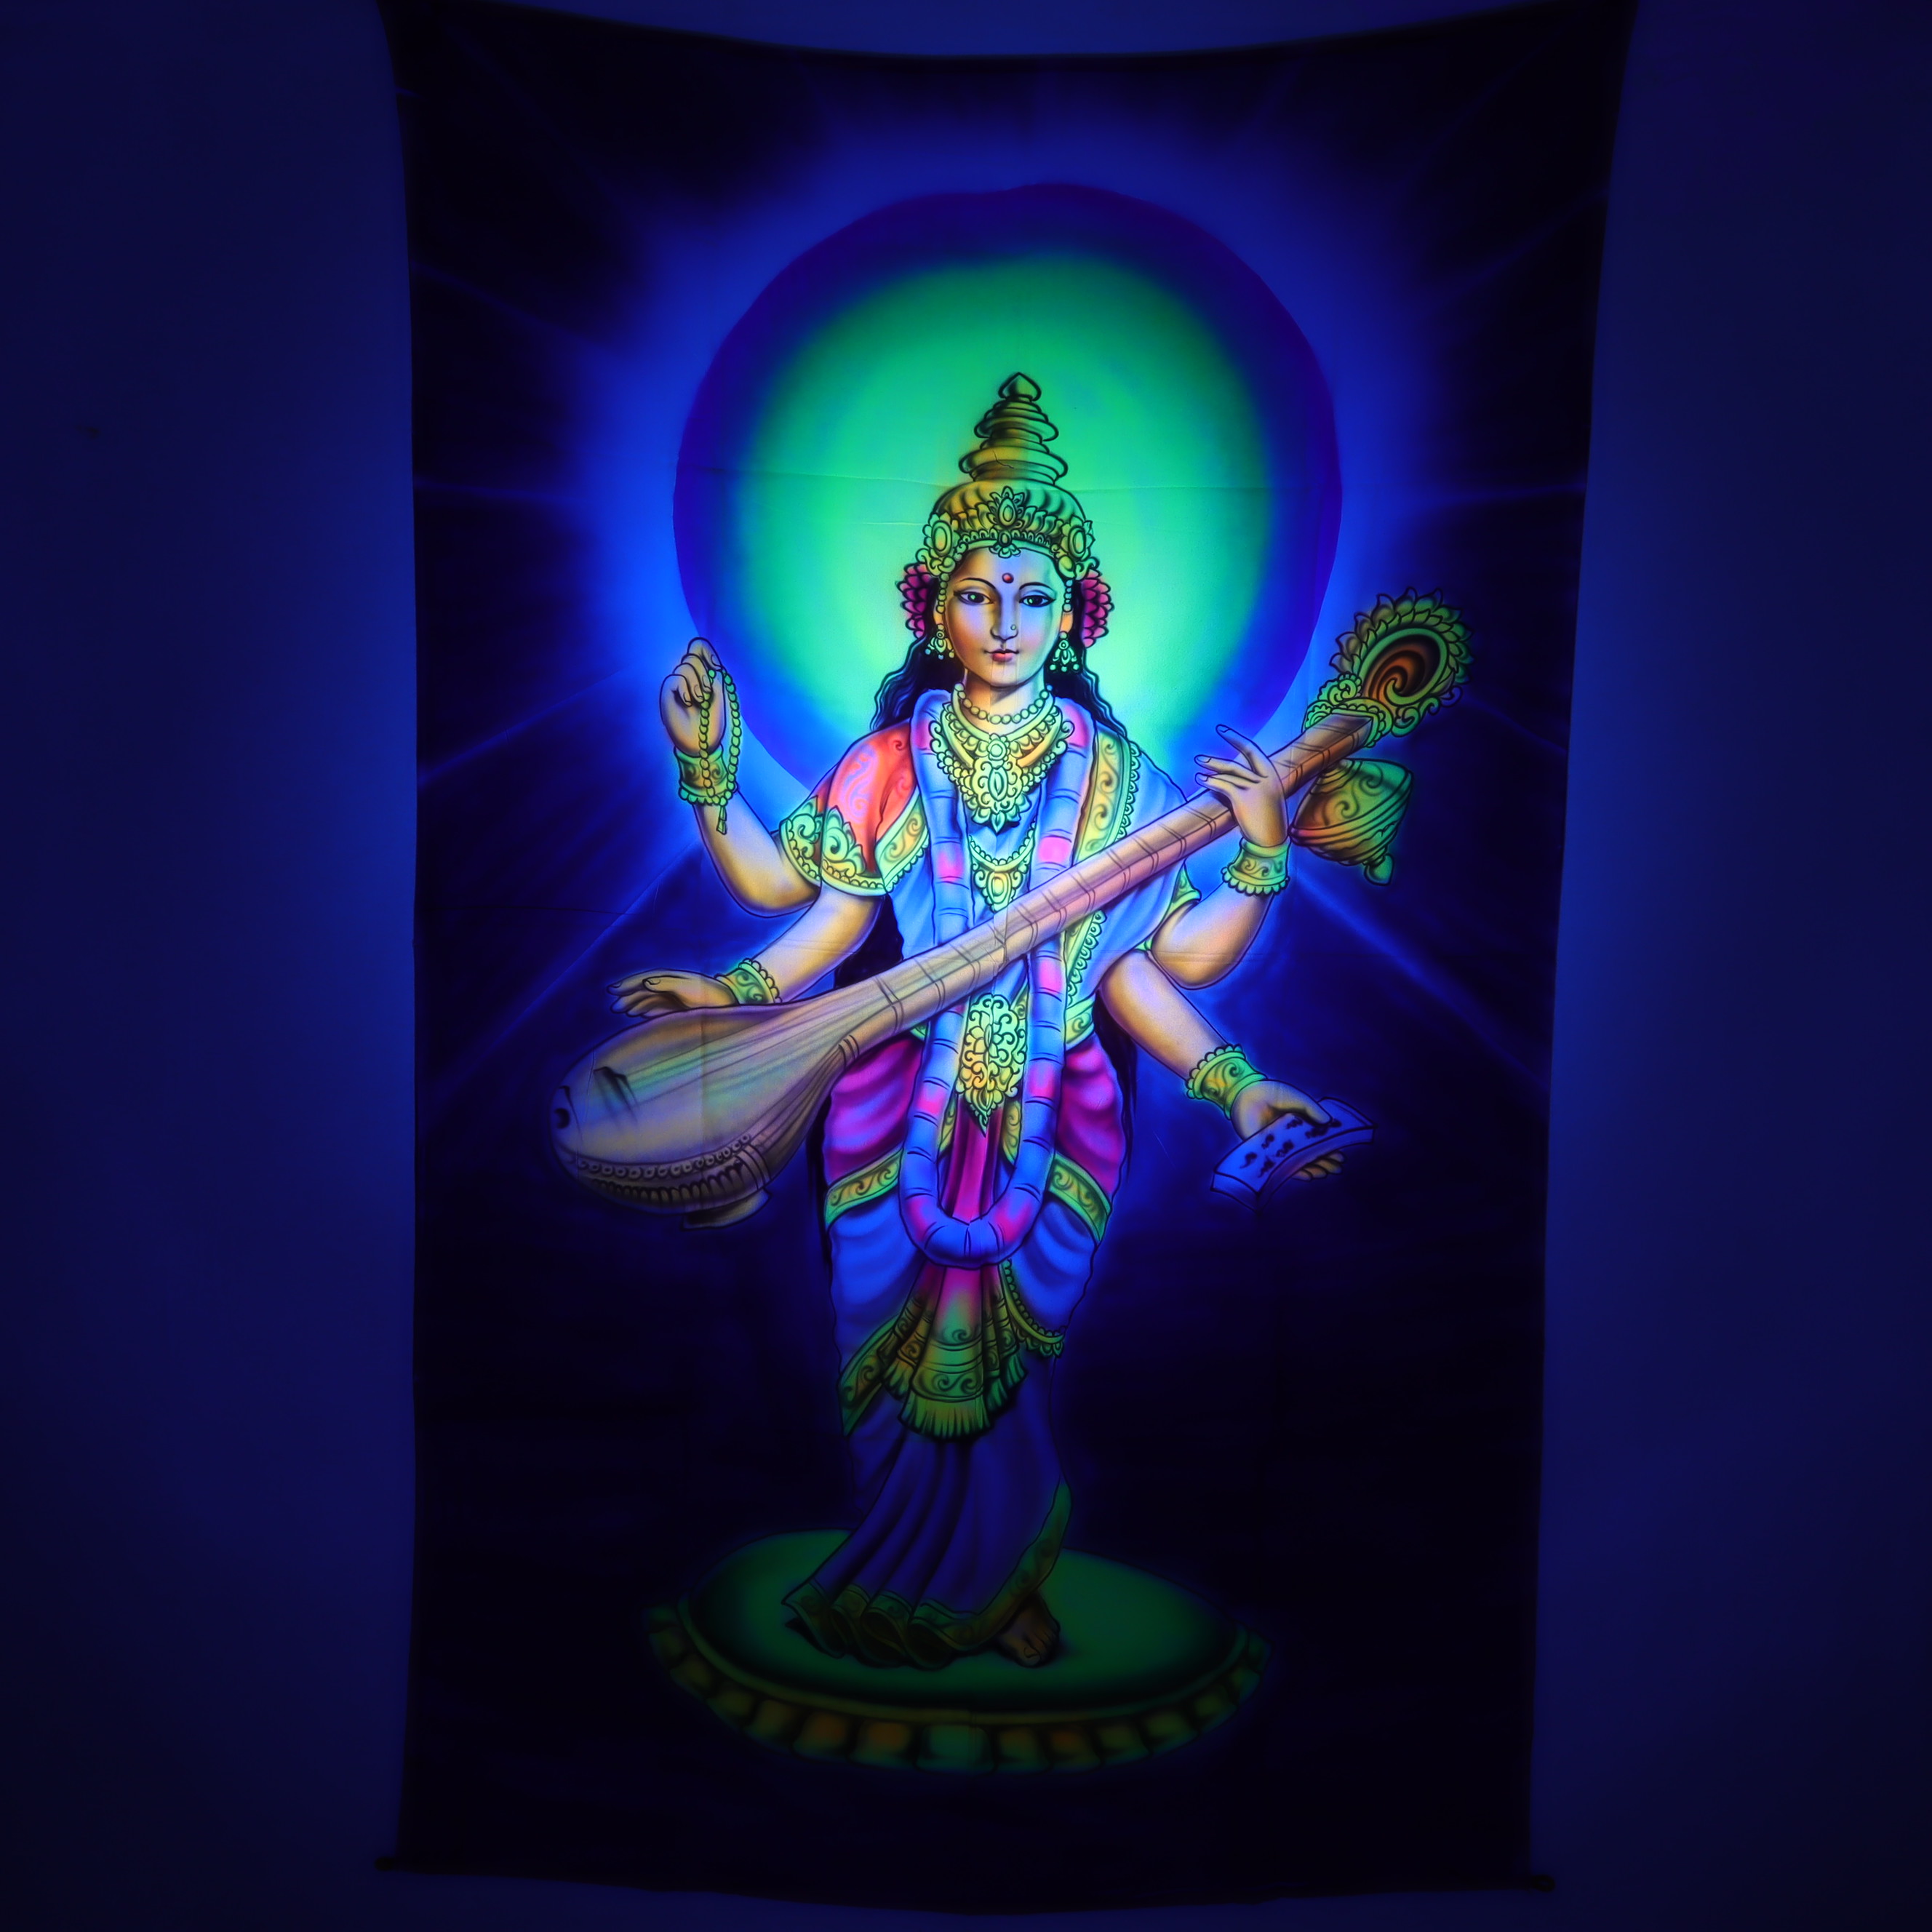 Wandtuch L 120x190 - Saraswati - Tantra Göttin der Weisheit - aufwendig handgemaltes Schwarzlicht-Tuch - mehrfarbig & UV-aktiv